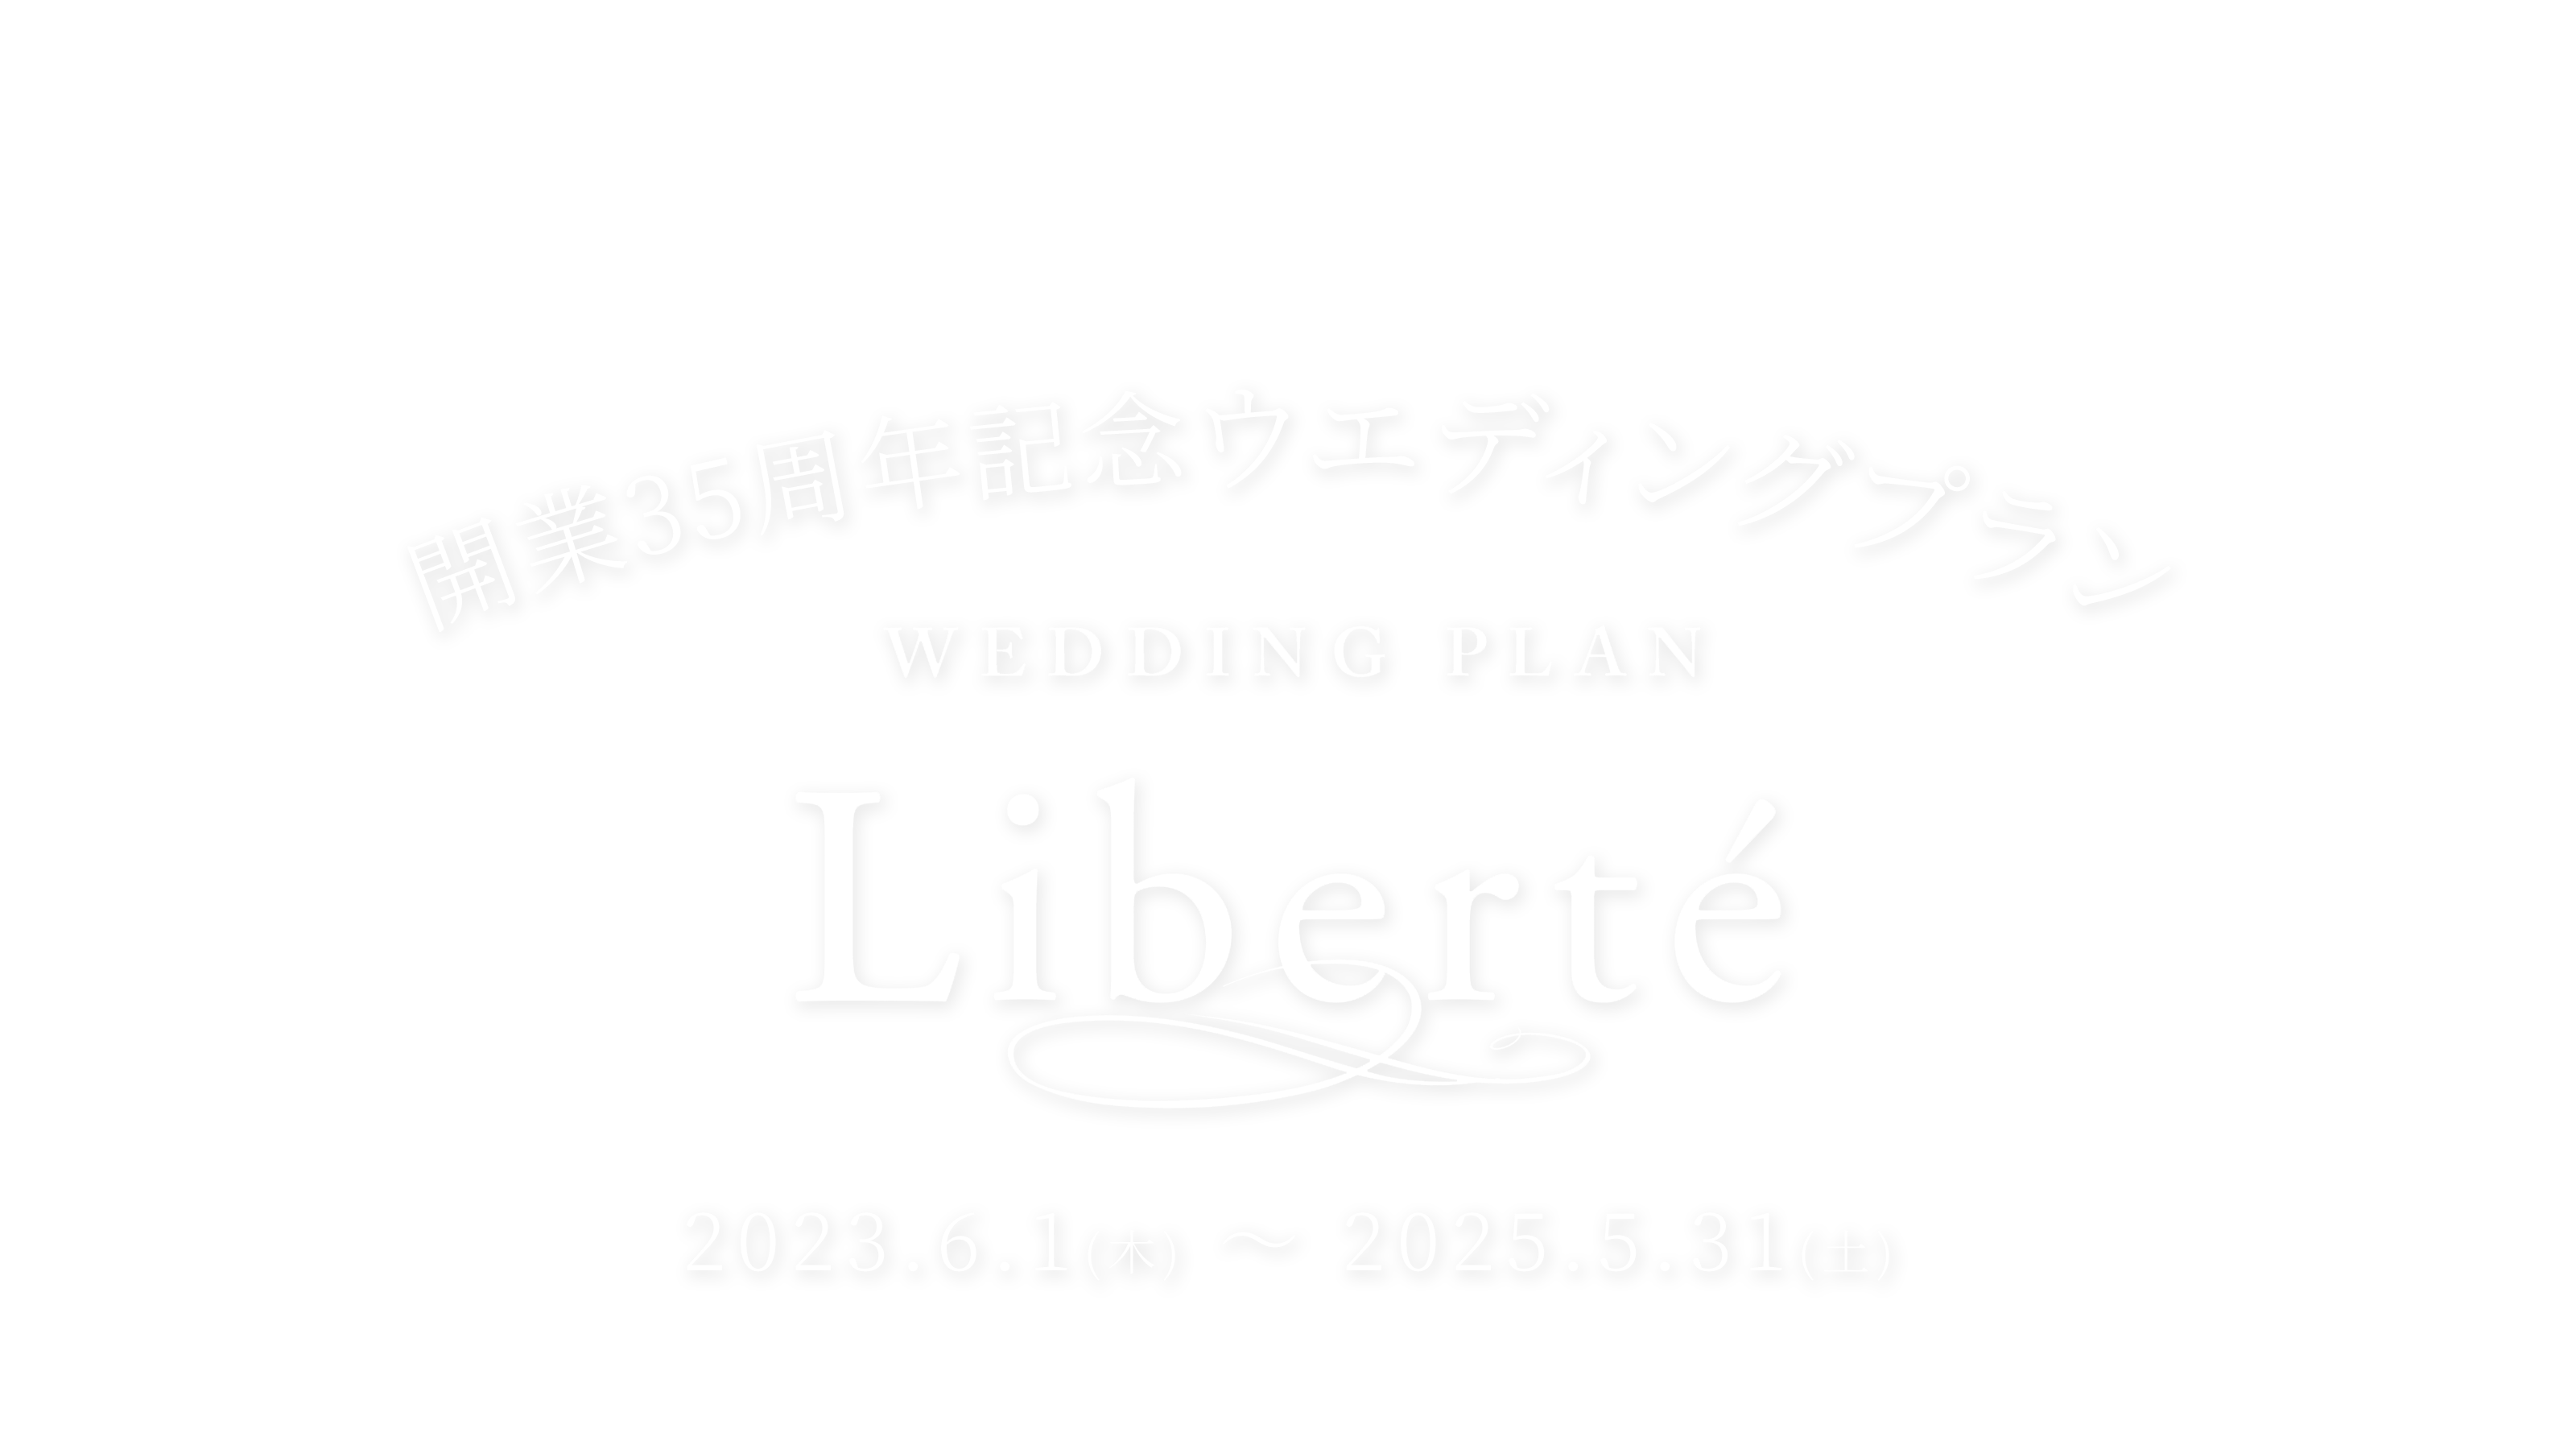 開業35周年記念ウエディングプラン Liberte 2023.6.1(土) ~ 2025.5.31(土)